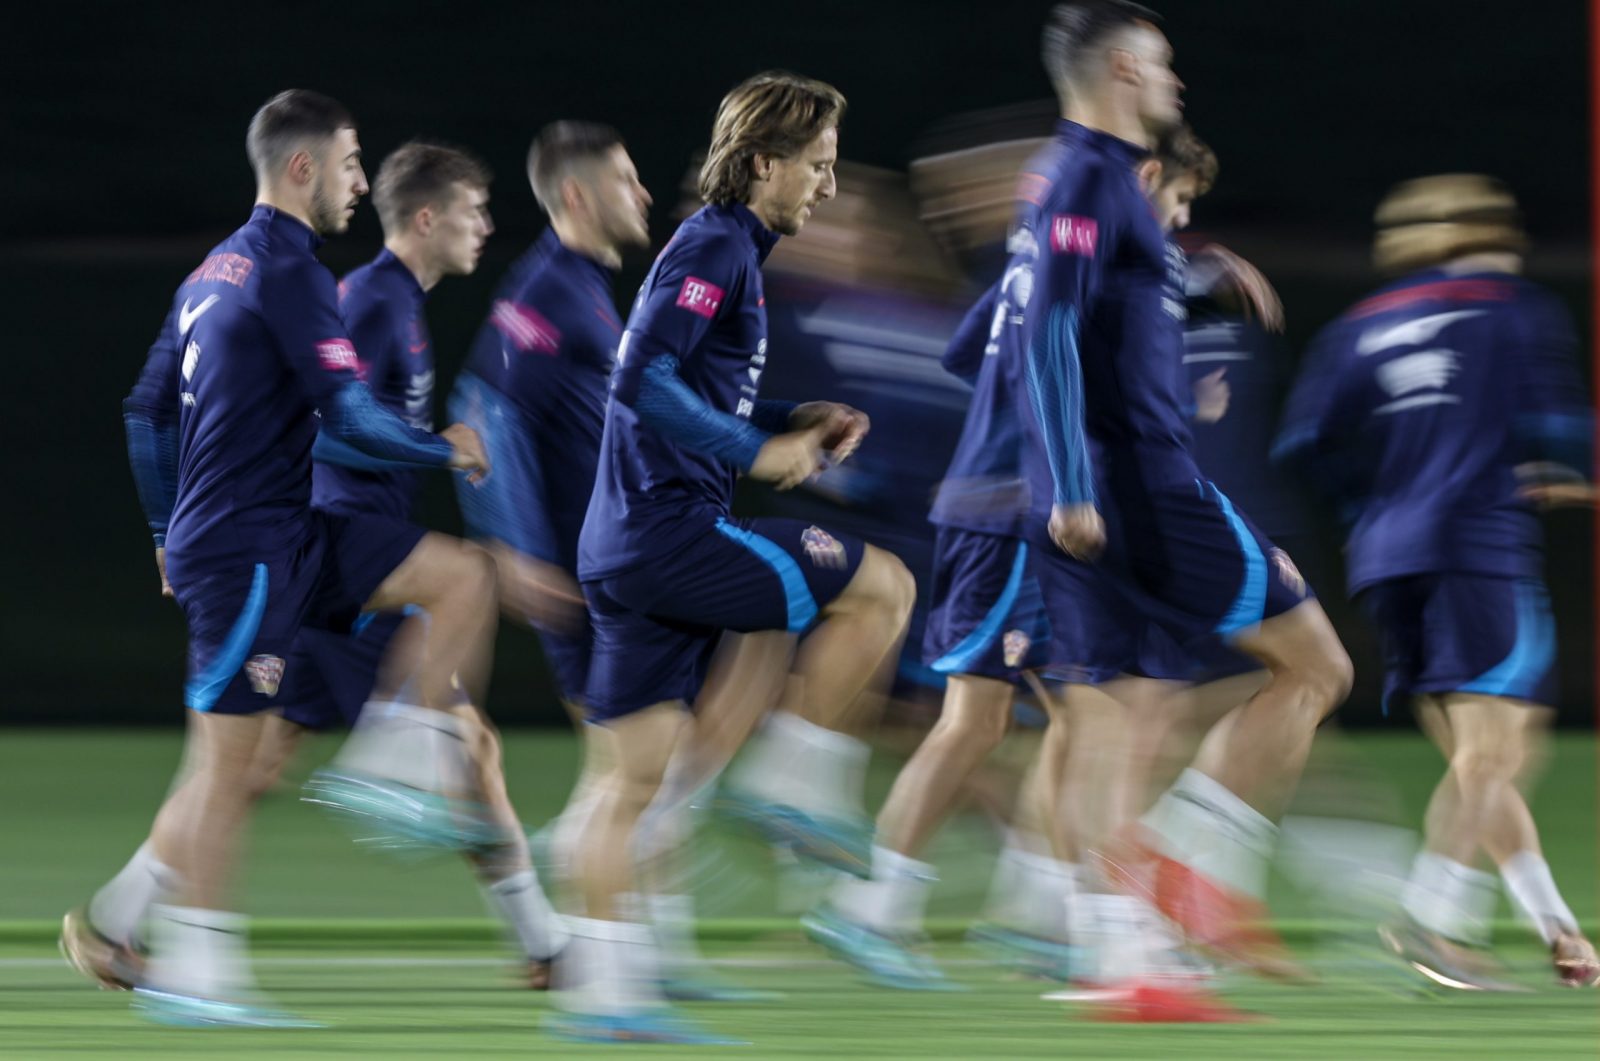 Doha, 11.12.2022 - Trening Hrvatske nogometne reprezentacije u trening kampu Al Ersal 3 u Dohi. Na slici Luka Modrić.
foto HINA/ Damir SENČAR/ ds